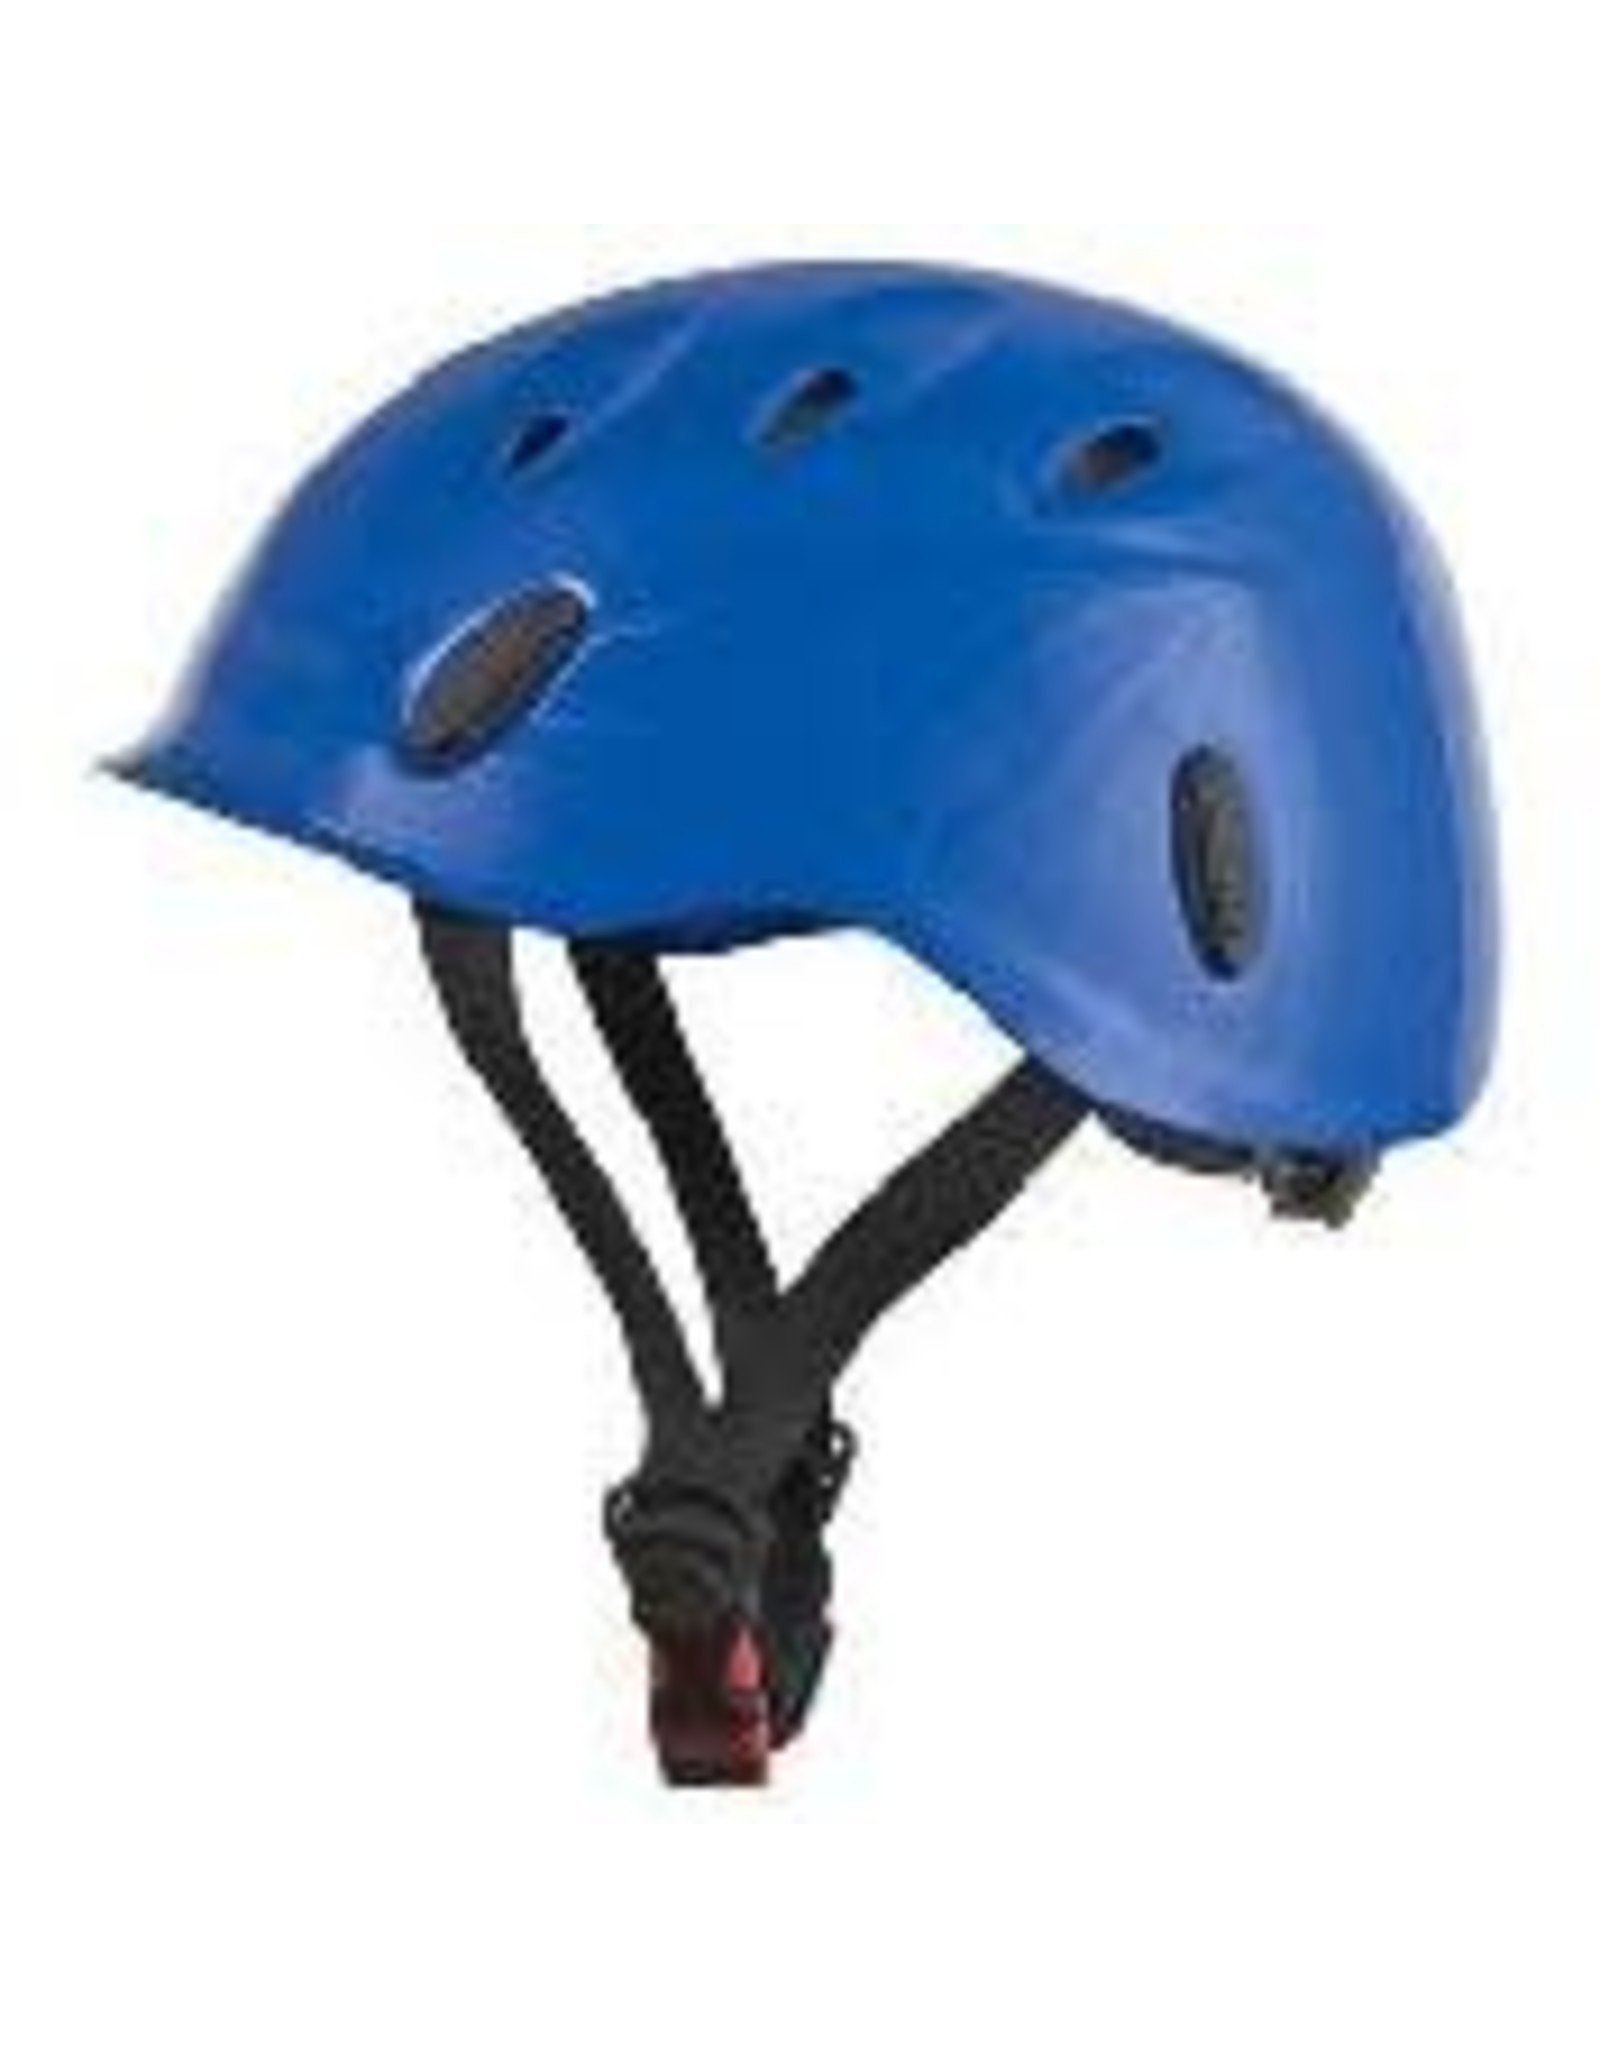 Combi Helmet